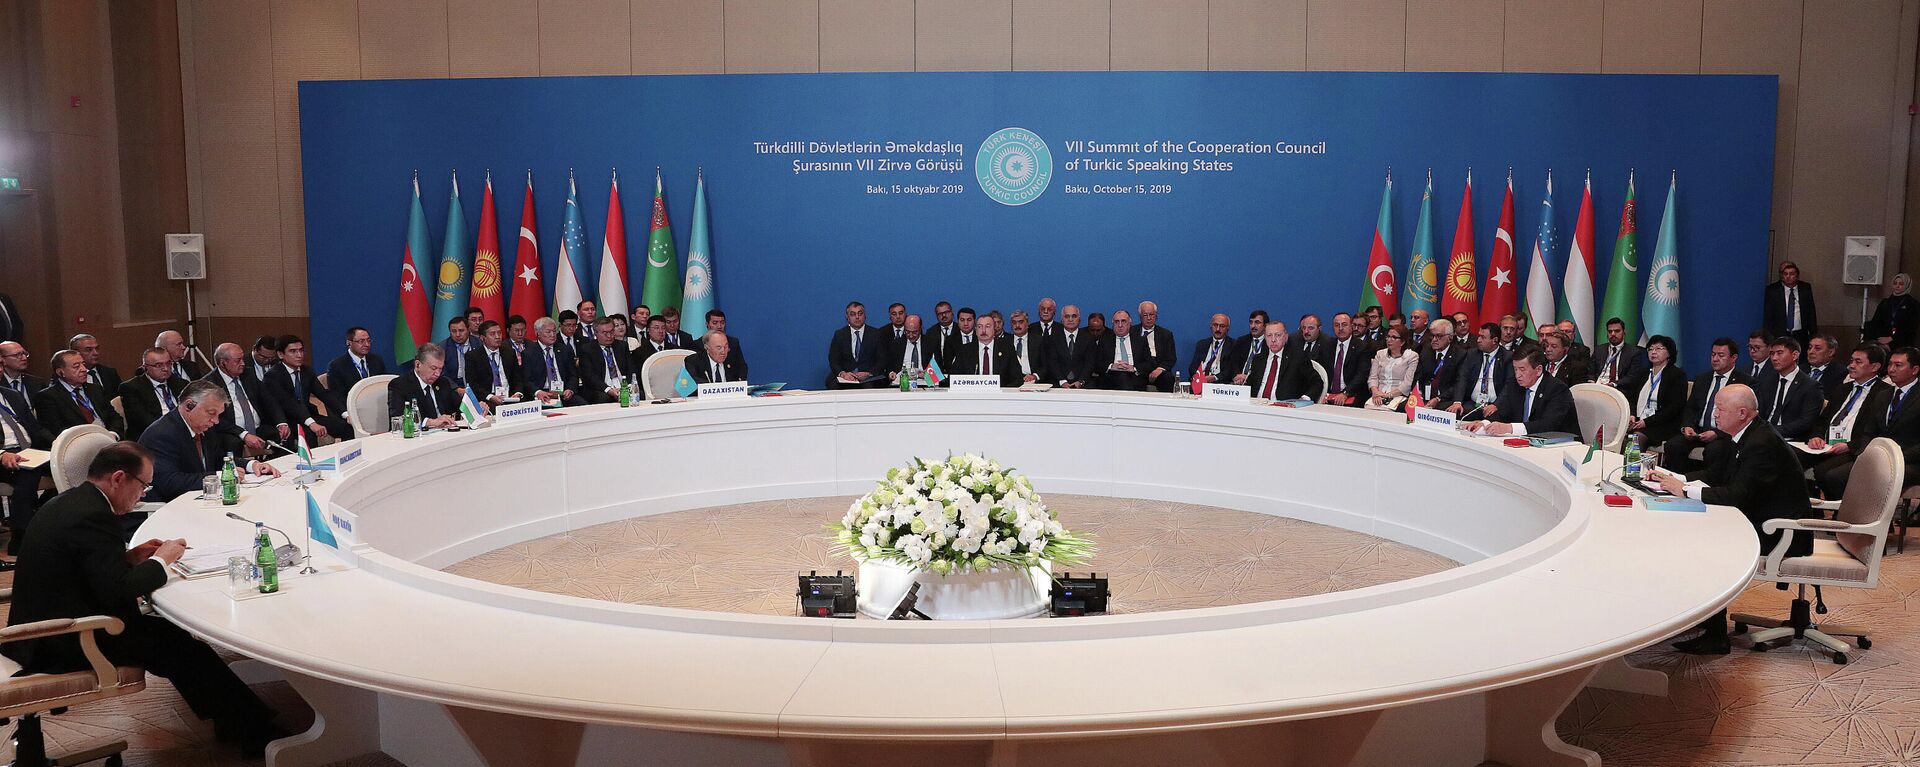 Una reunión de los líderes del Consejo de Cooperación de los Estados de Habla Túrquica el octubre de 2019 - Sputnik Mundo, 1920, 02.04.2021